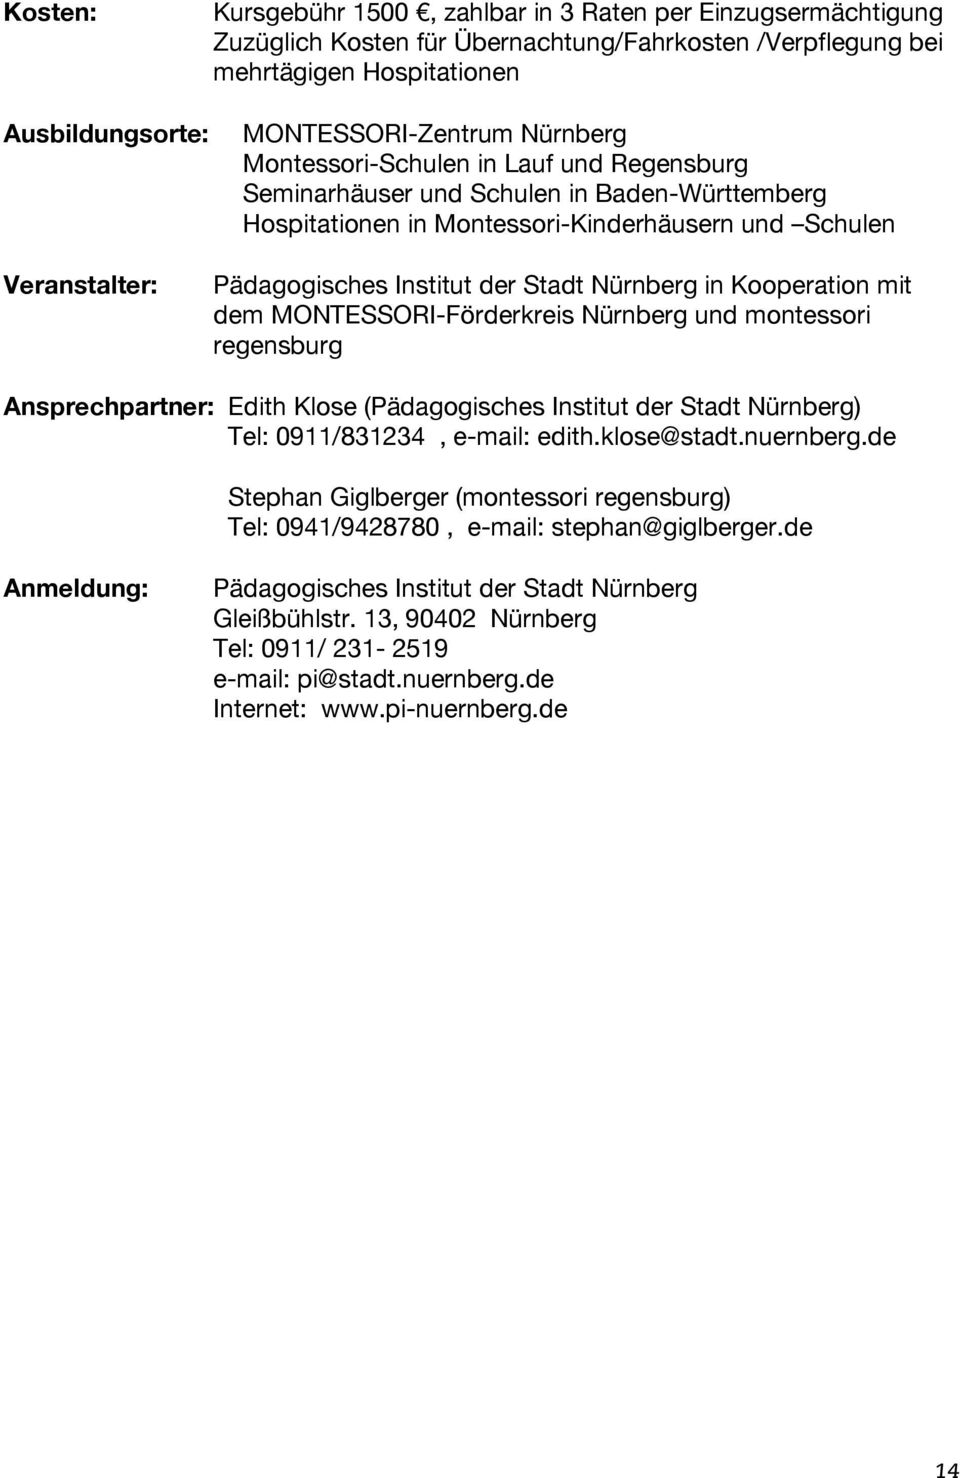 Stadt Nürnberg in Kooperation mit dem MONTESSORI-Förderkreis Nürnberg und montessori regensburg Ansprechpartner: Edith Klose (Pädagogisches Institut der Stadt Nürnberg) Tel: 0911/831234, e-mail: